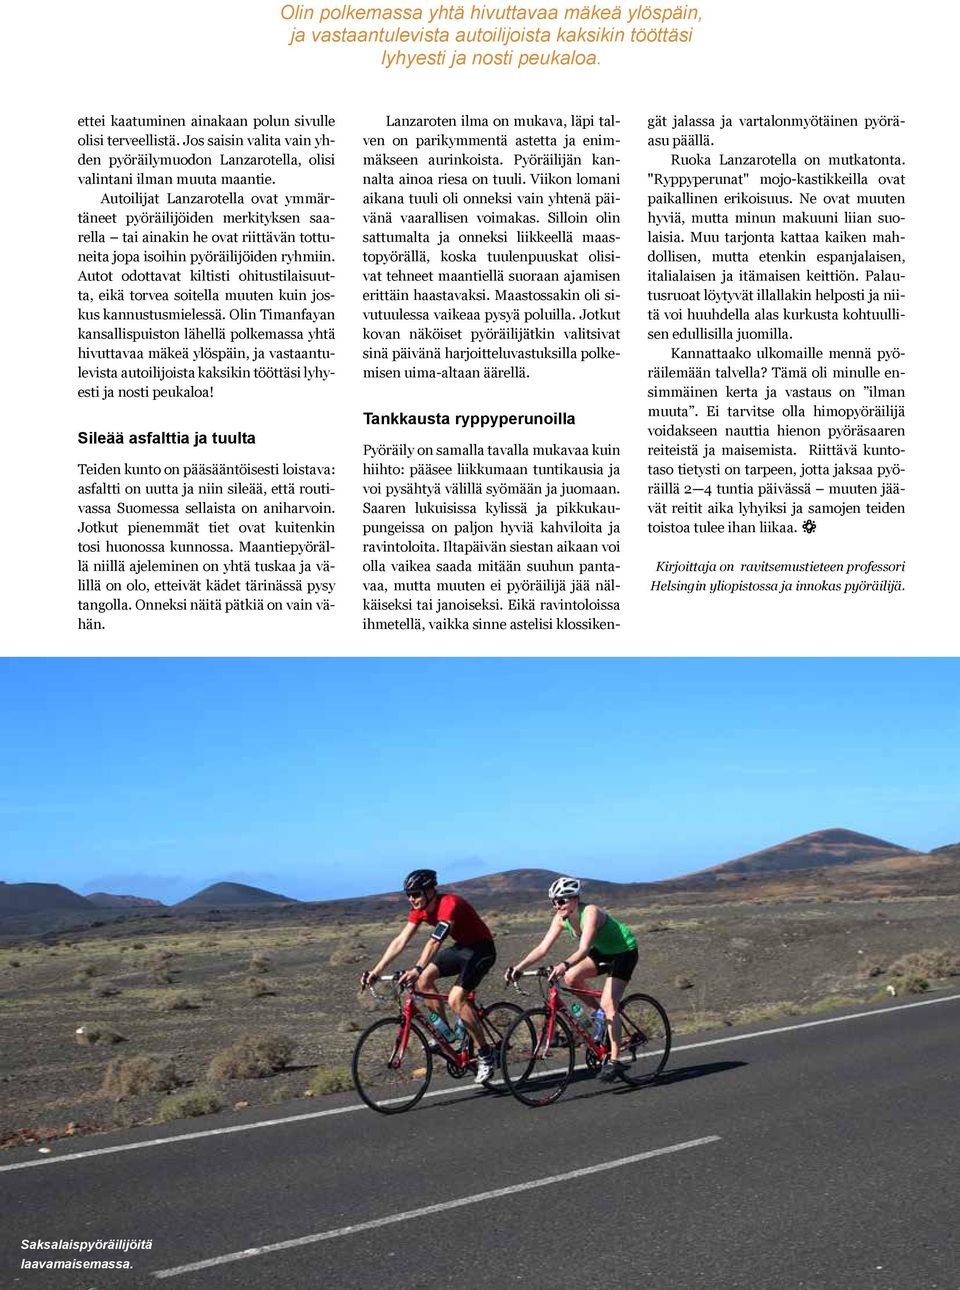 Autoilijat Lanzarotella ovat ymmärtäneet pyöräilijöiden merkityksen saarella tai ainakin he ovat riittävän tottuneita jopa isoihin pyöräilijöiden ryhmiin.